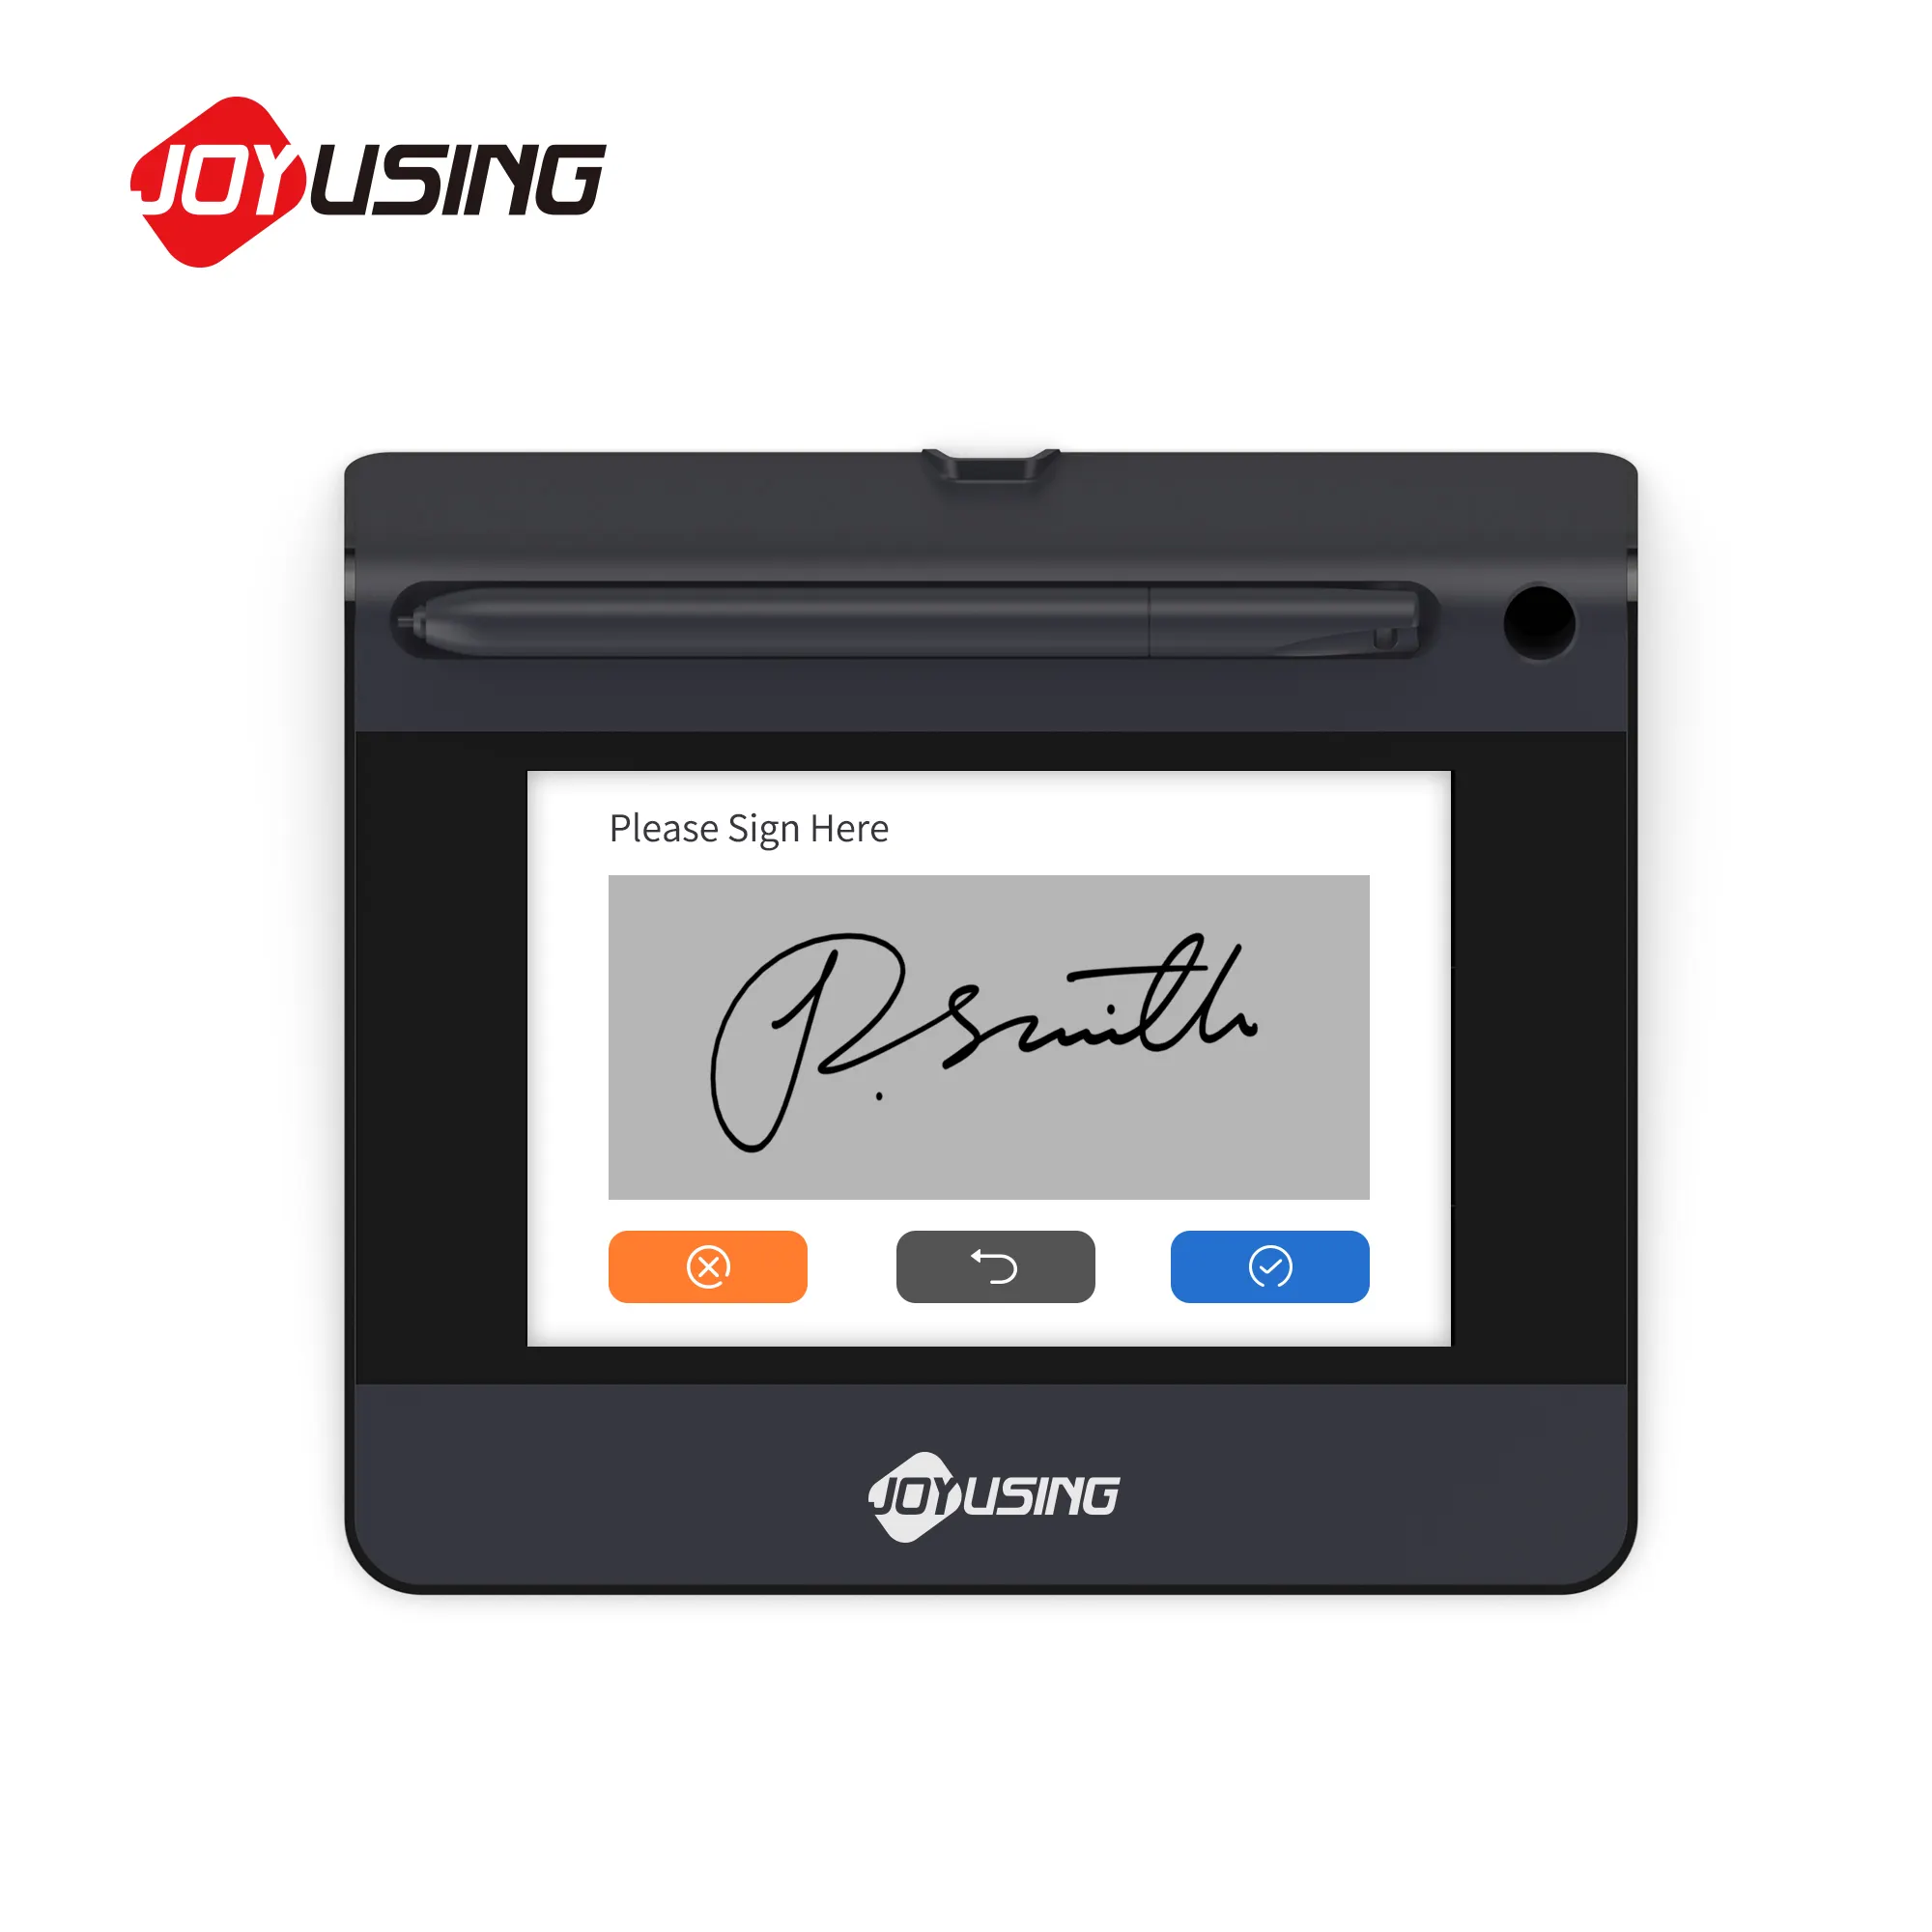 JOYUSING SP550 Advanced LCD firma Pad firma elettronica Pad per scrivere con penna 1024 i livelli di pressione